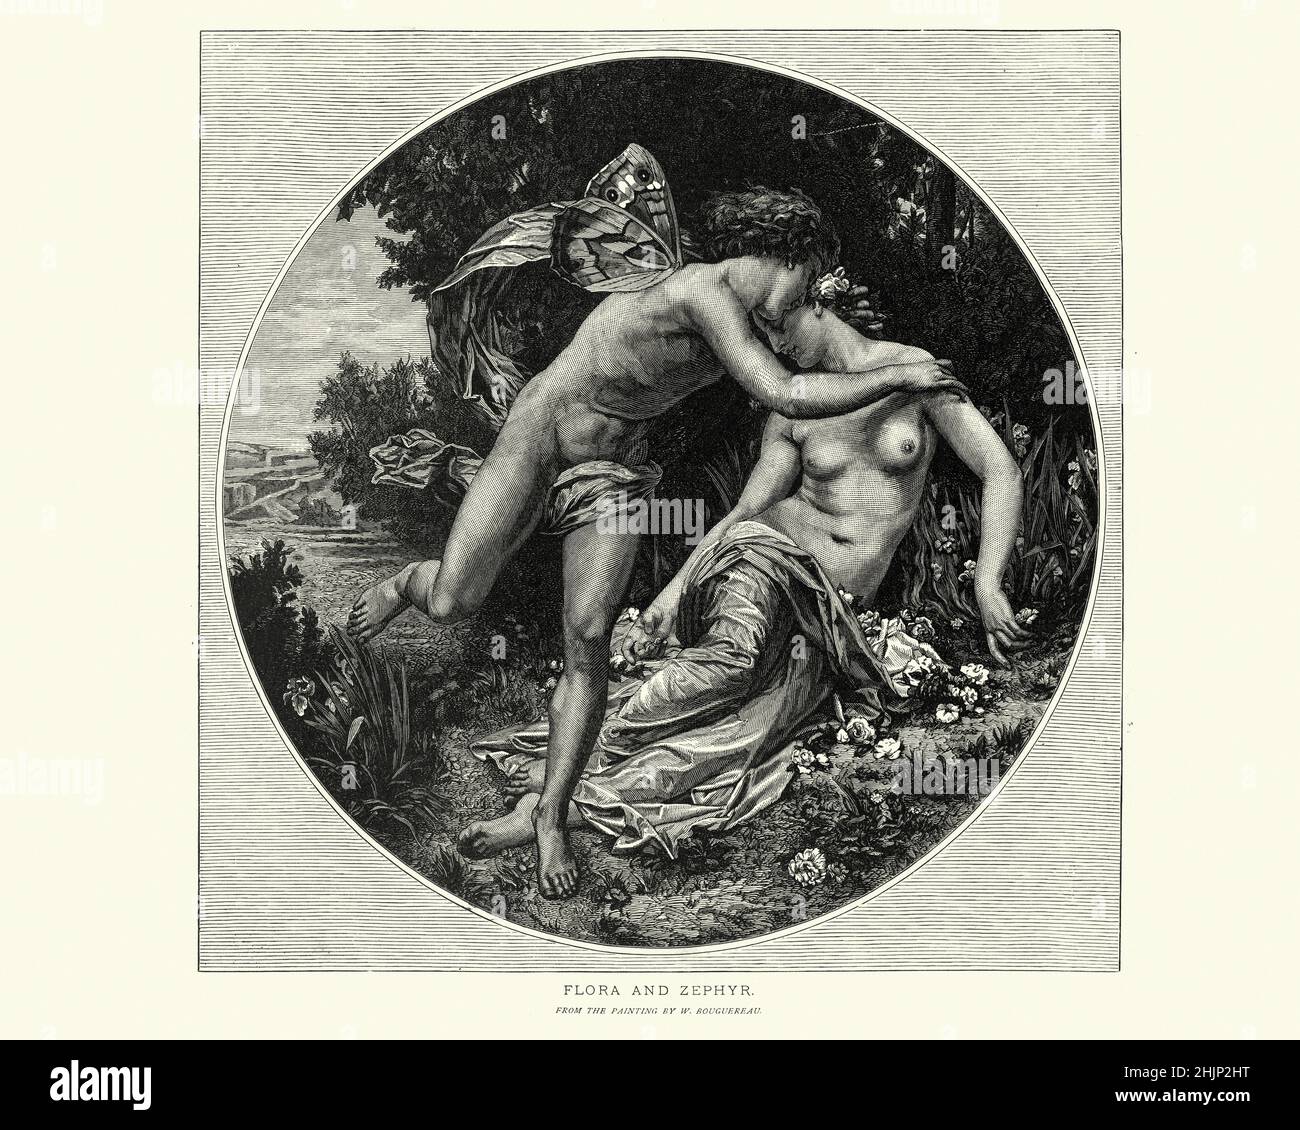 Vintage-Illustration der römischen Mythologie, Legende der Flora (Göttin der Blumen und des Frühlings) und Zaphyr (Gott des Windes) Stockfoto